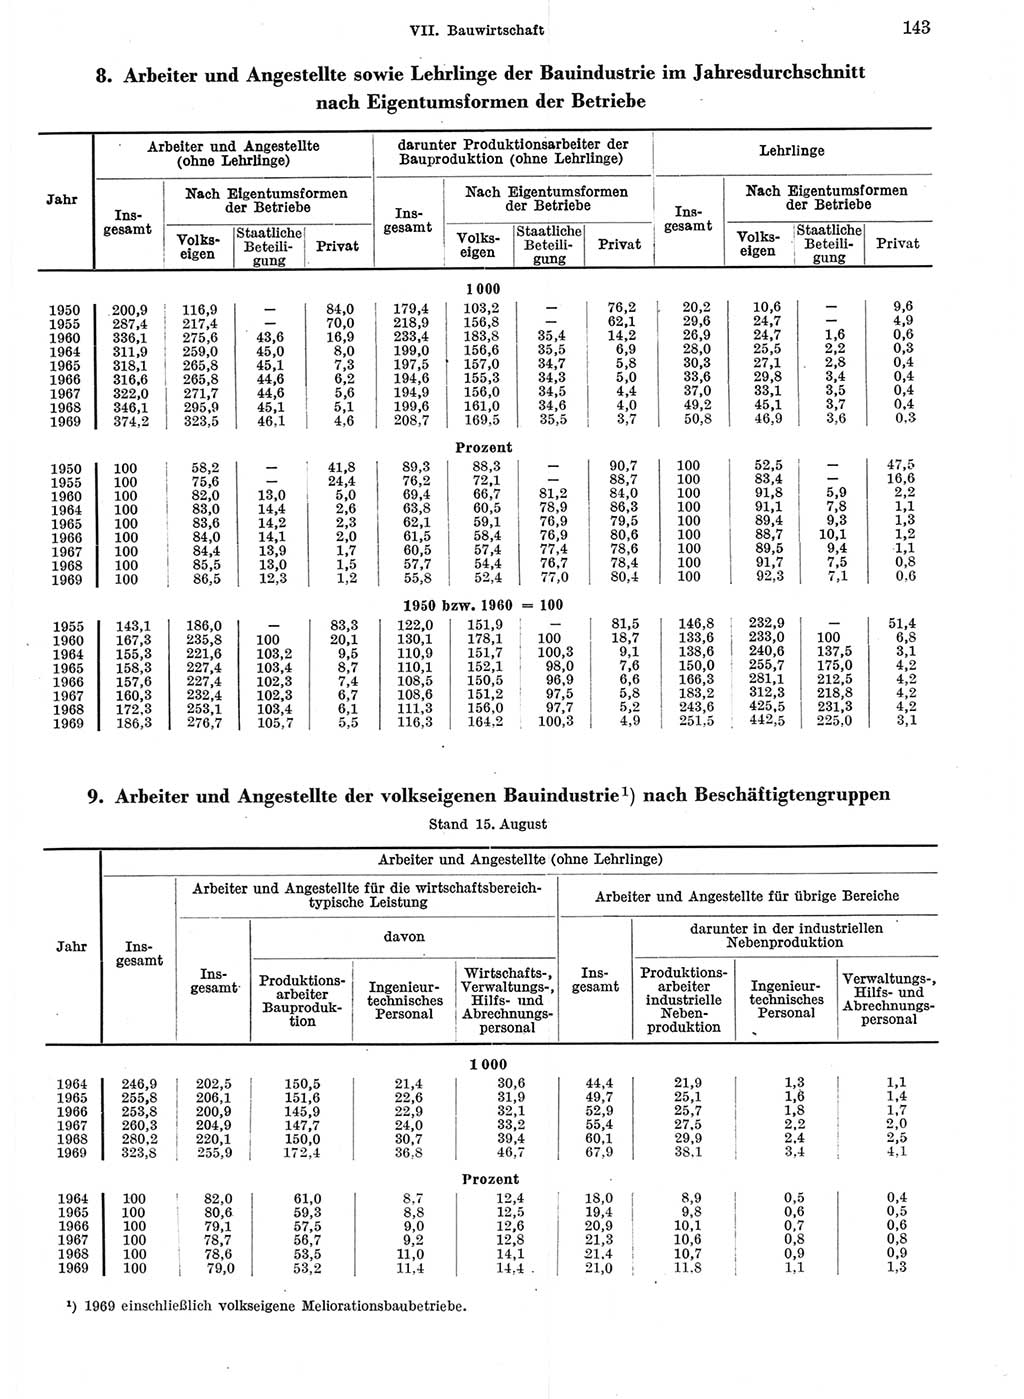 Statistisches Jahrbuch der Deutschen Demokratischen Republik (DDR) 1970, Seite 143 (Stat. Jb. DDR 1970, S. 143)